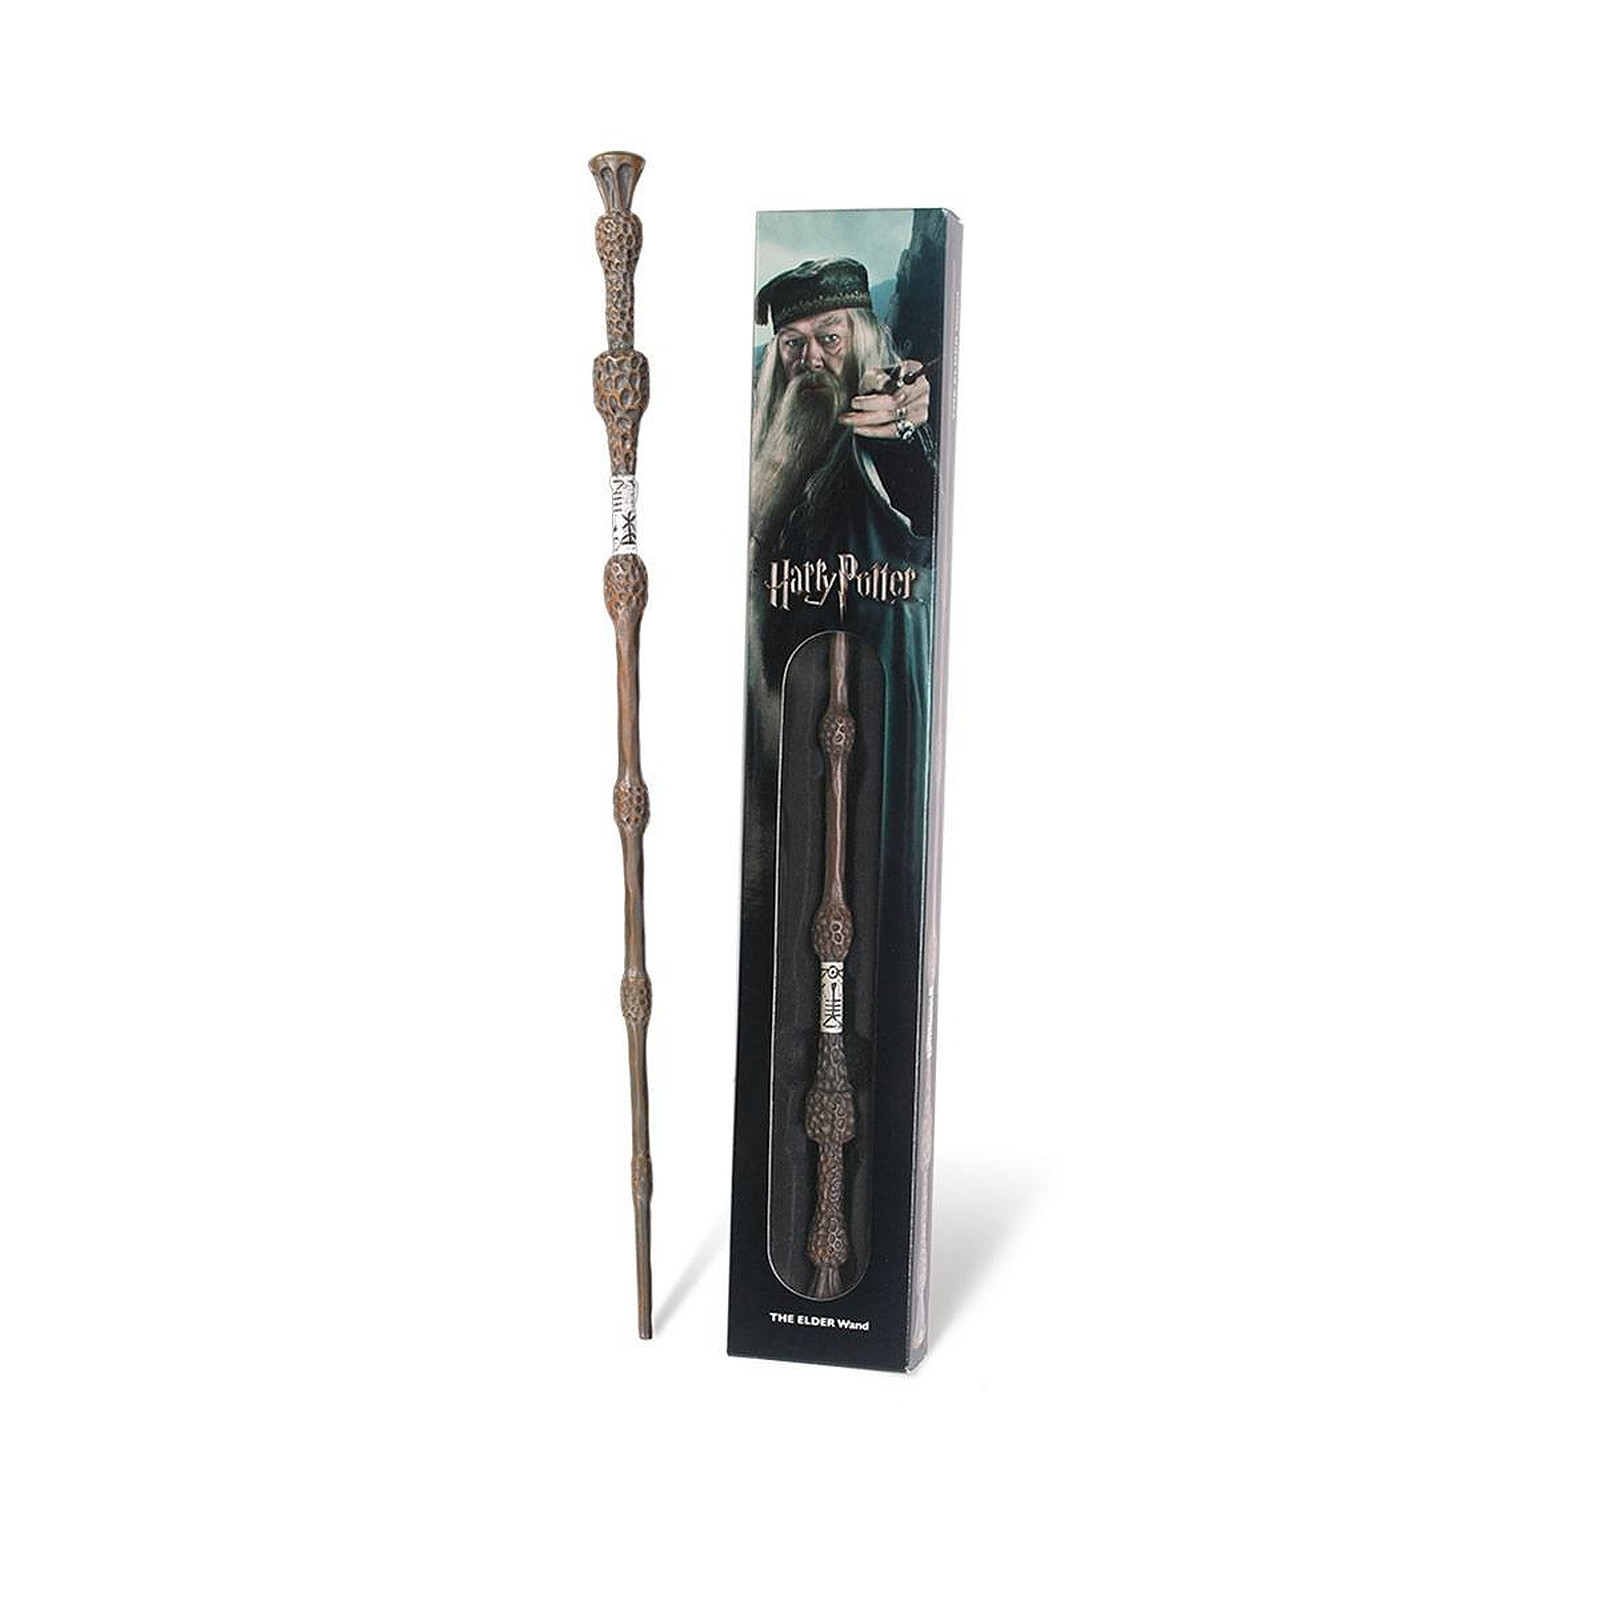 Harry Potter - Replique baguette Dumbledore 38 cm - Figurines Noble Collection